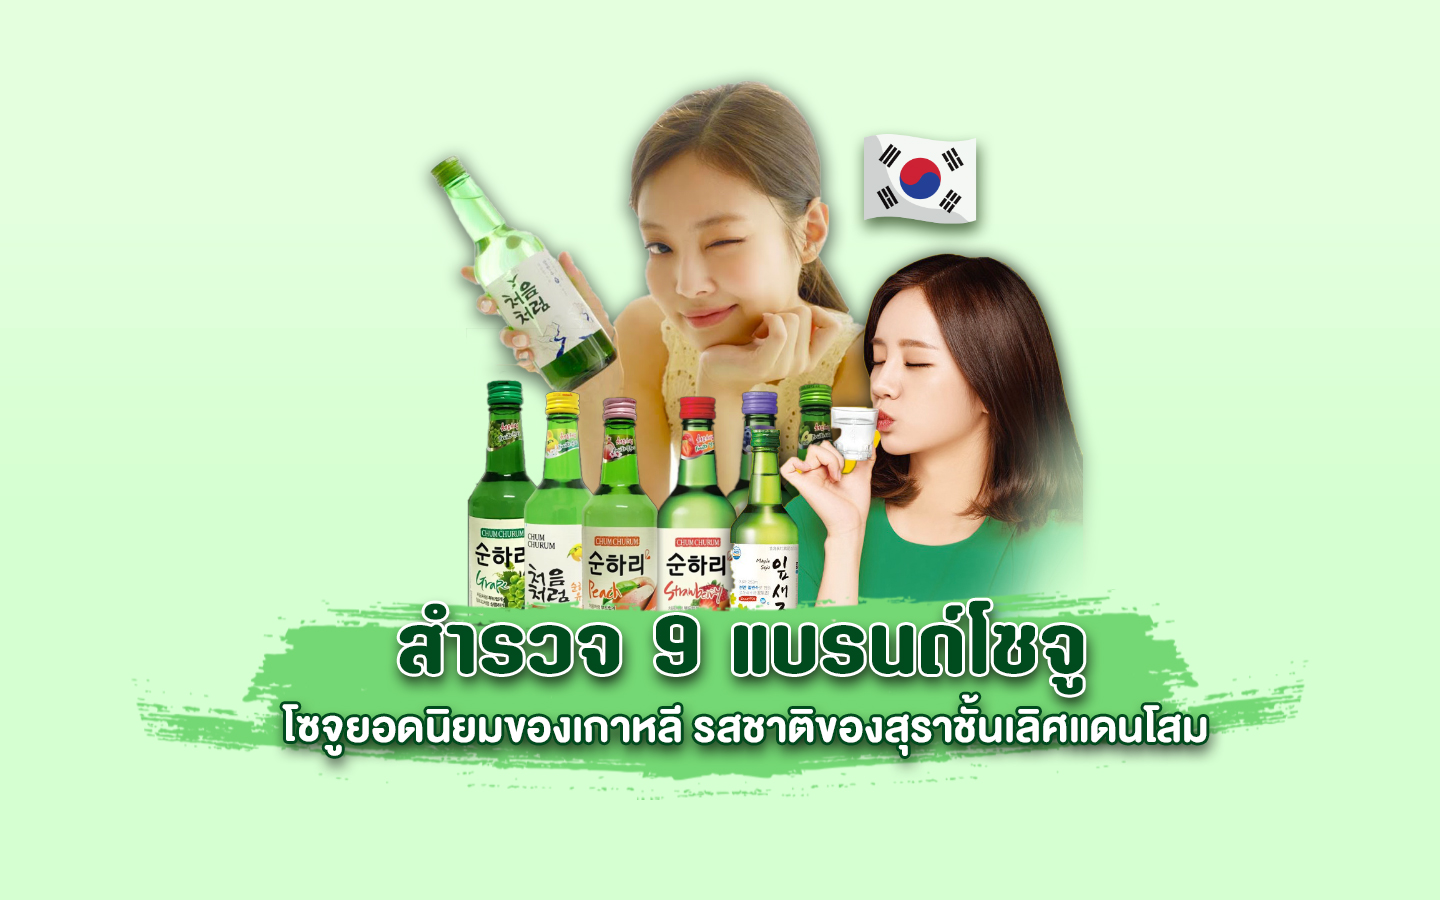 9 แบรนด์โซจูยอดนิยมของเกาหลี รสชาติของสุราชั้นเลิศของเกาหลี